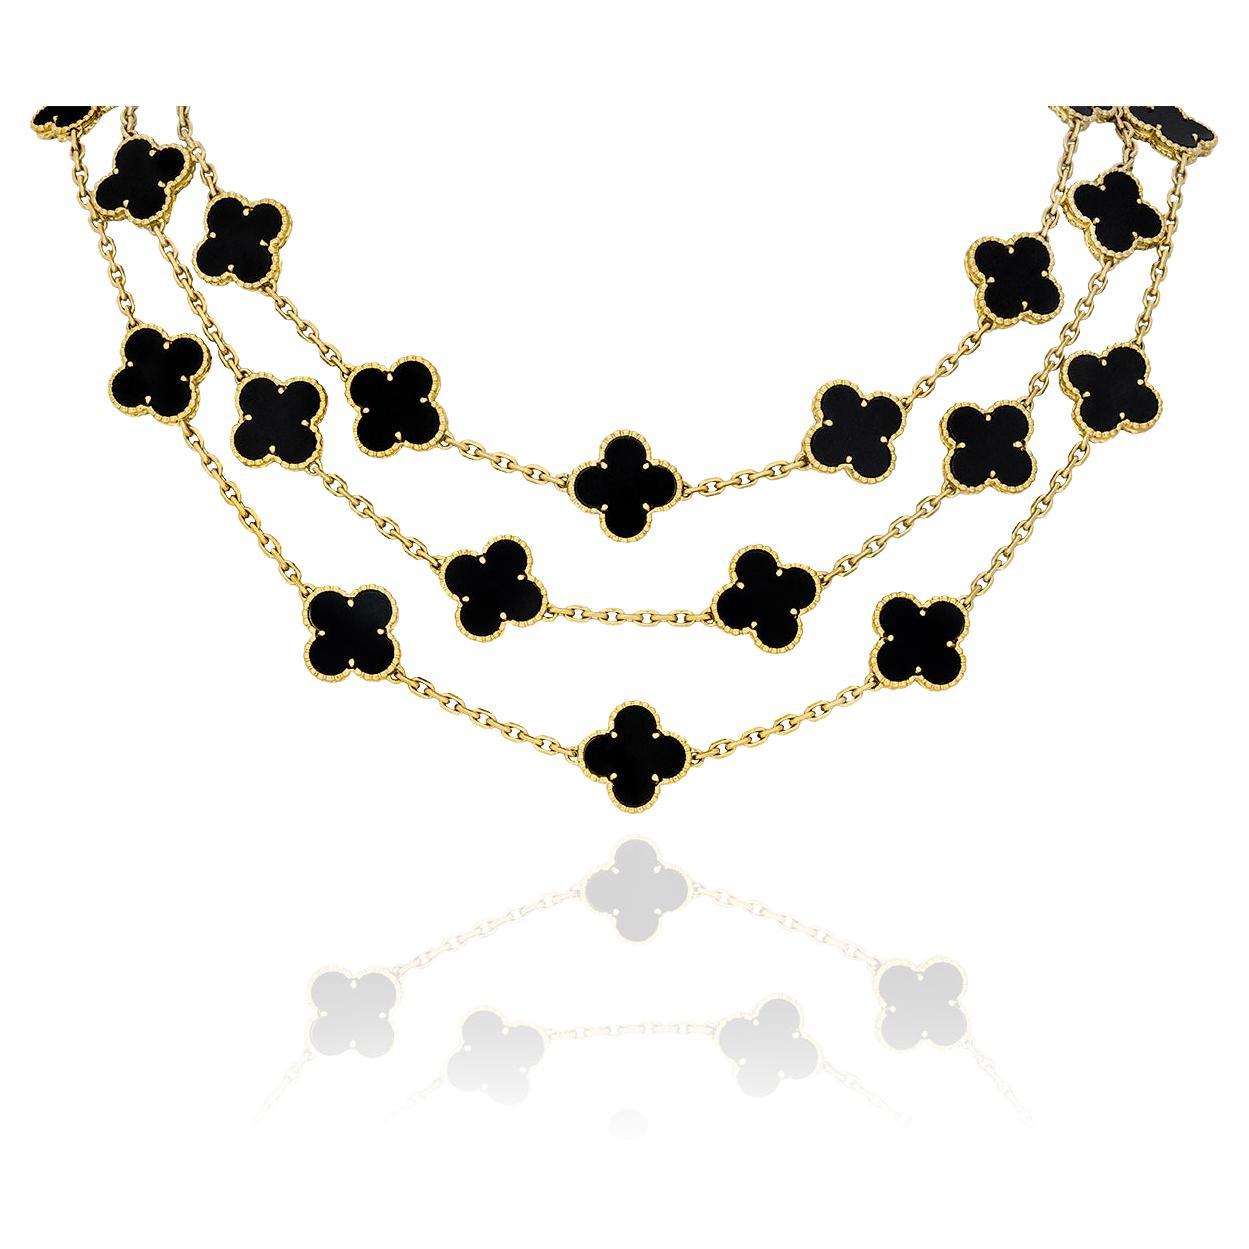 Ltd Edition Van Cleef & Arpels Onyx Vintage Alhambra Halskette mit 29 Motiven aus Onyx